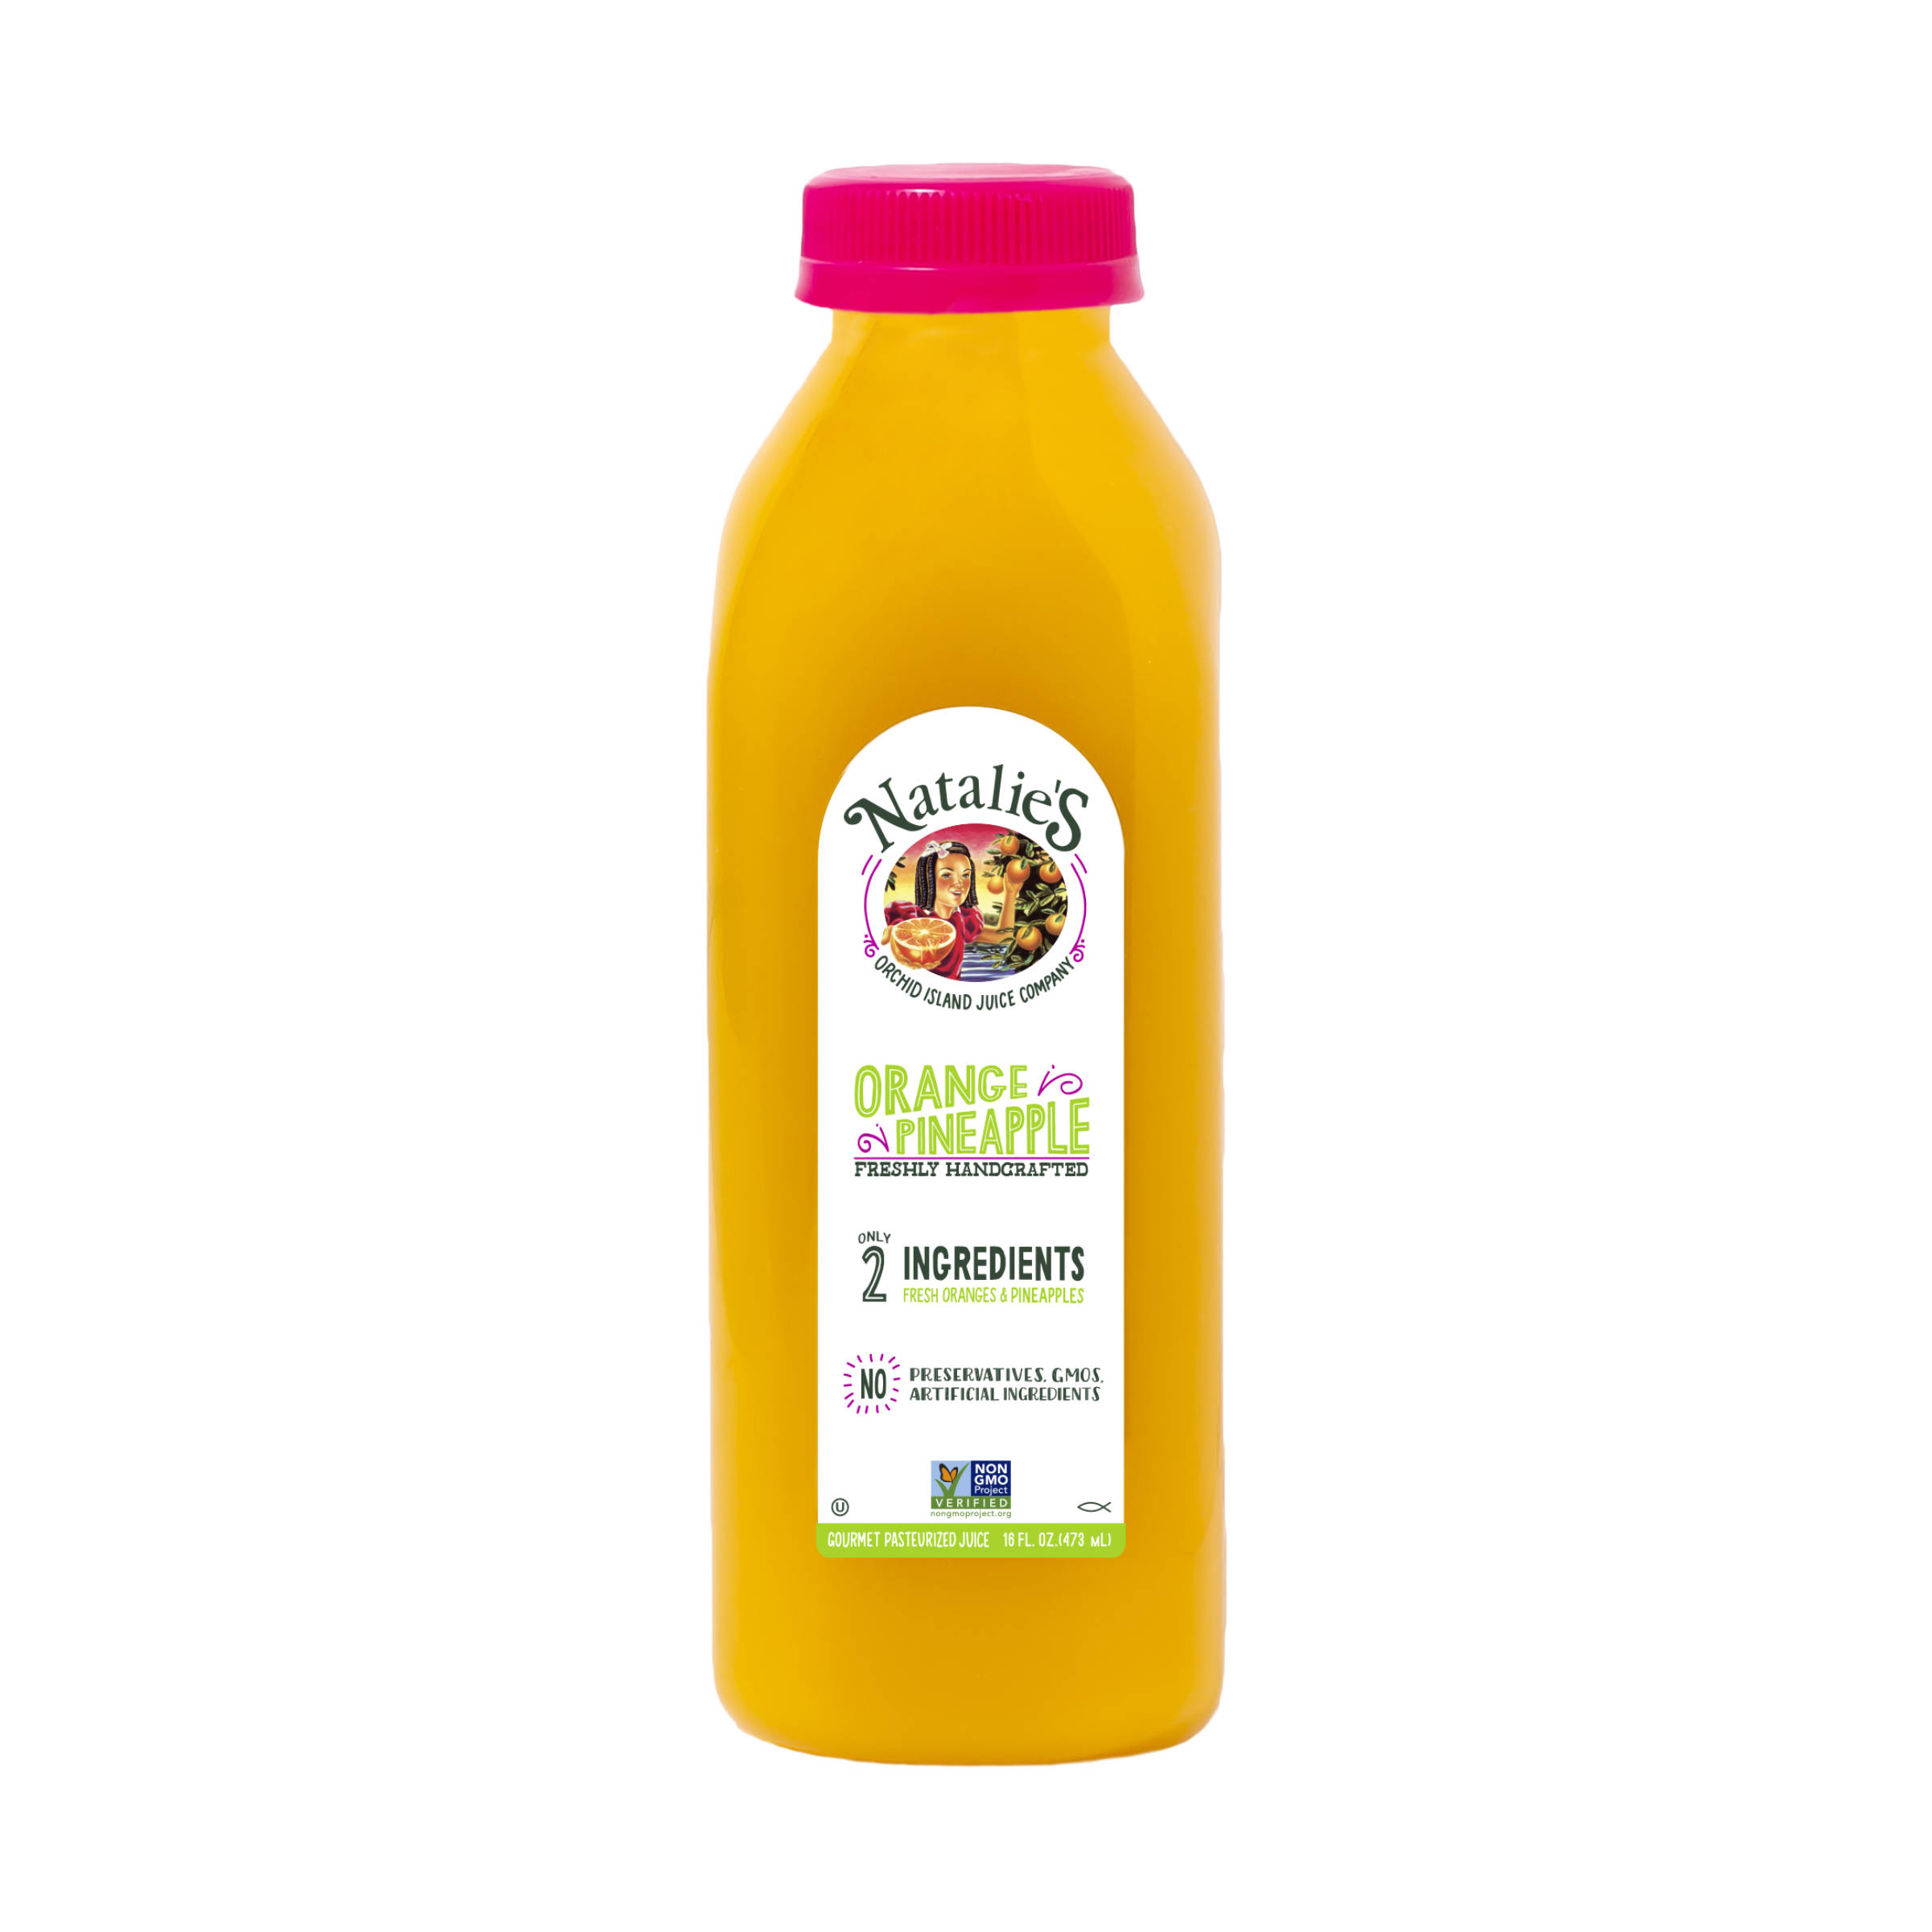 Orange Pineapple Juice 4028